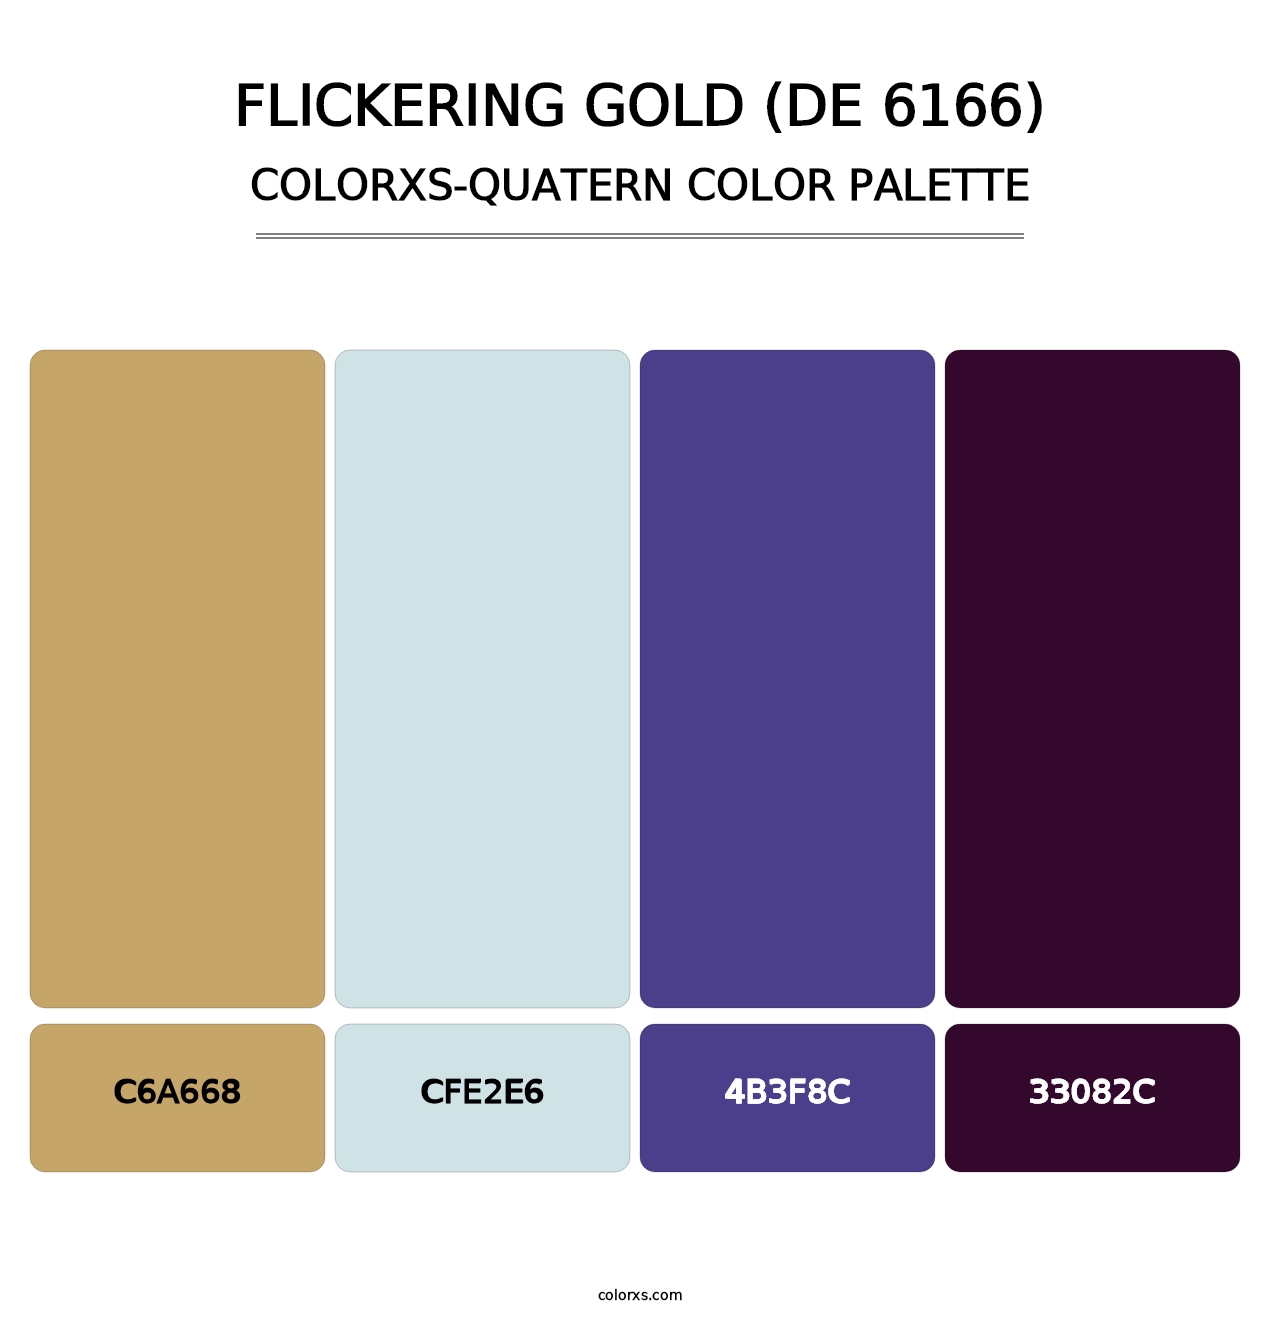 Flickering Gold (DE 6166) - Colorxs Quatern Palette